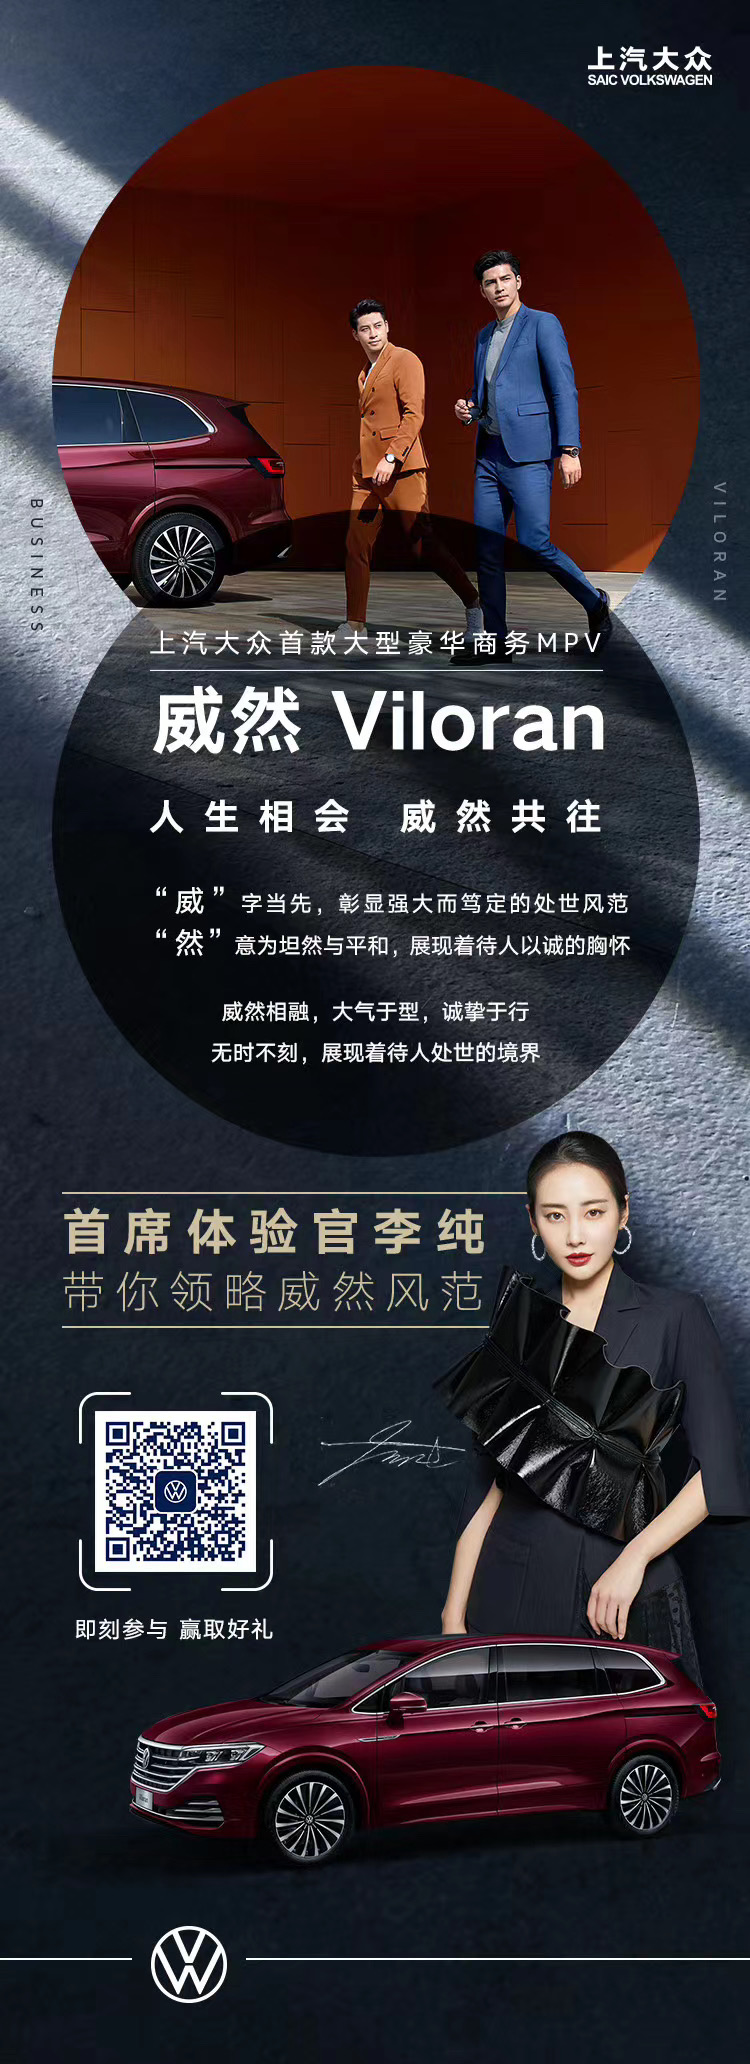 上汽大众首款豪华MPV Viloran定名威然 5月28日上市